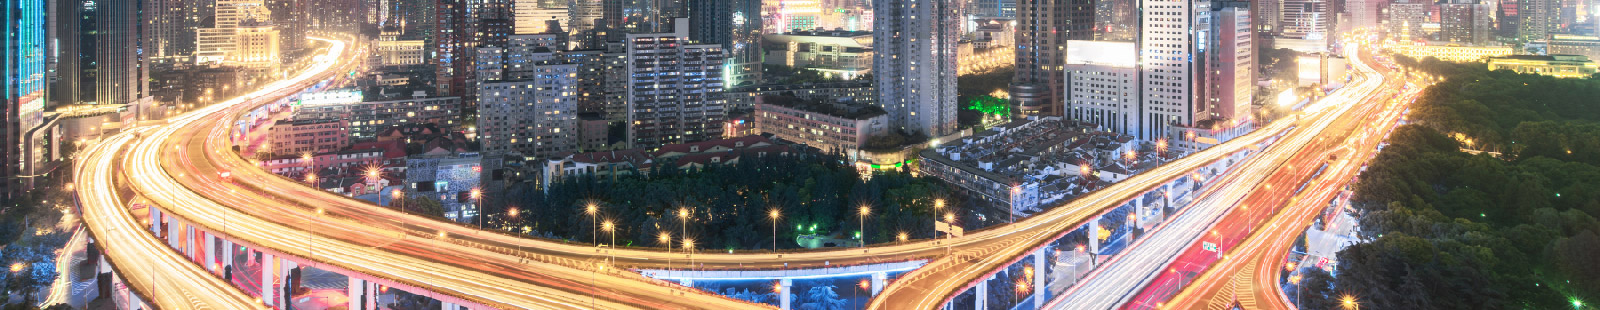 vue aérienne d'une autoroute de nuit dans une grande ville